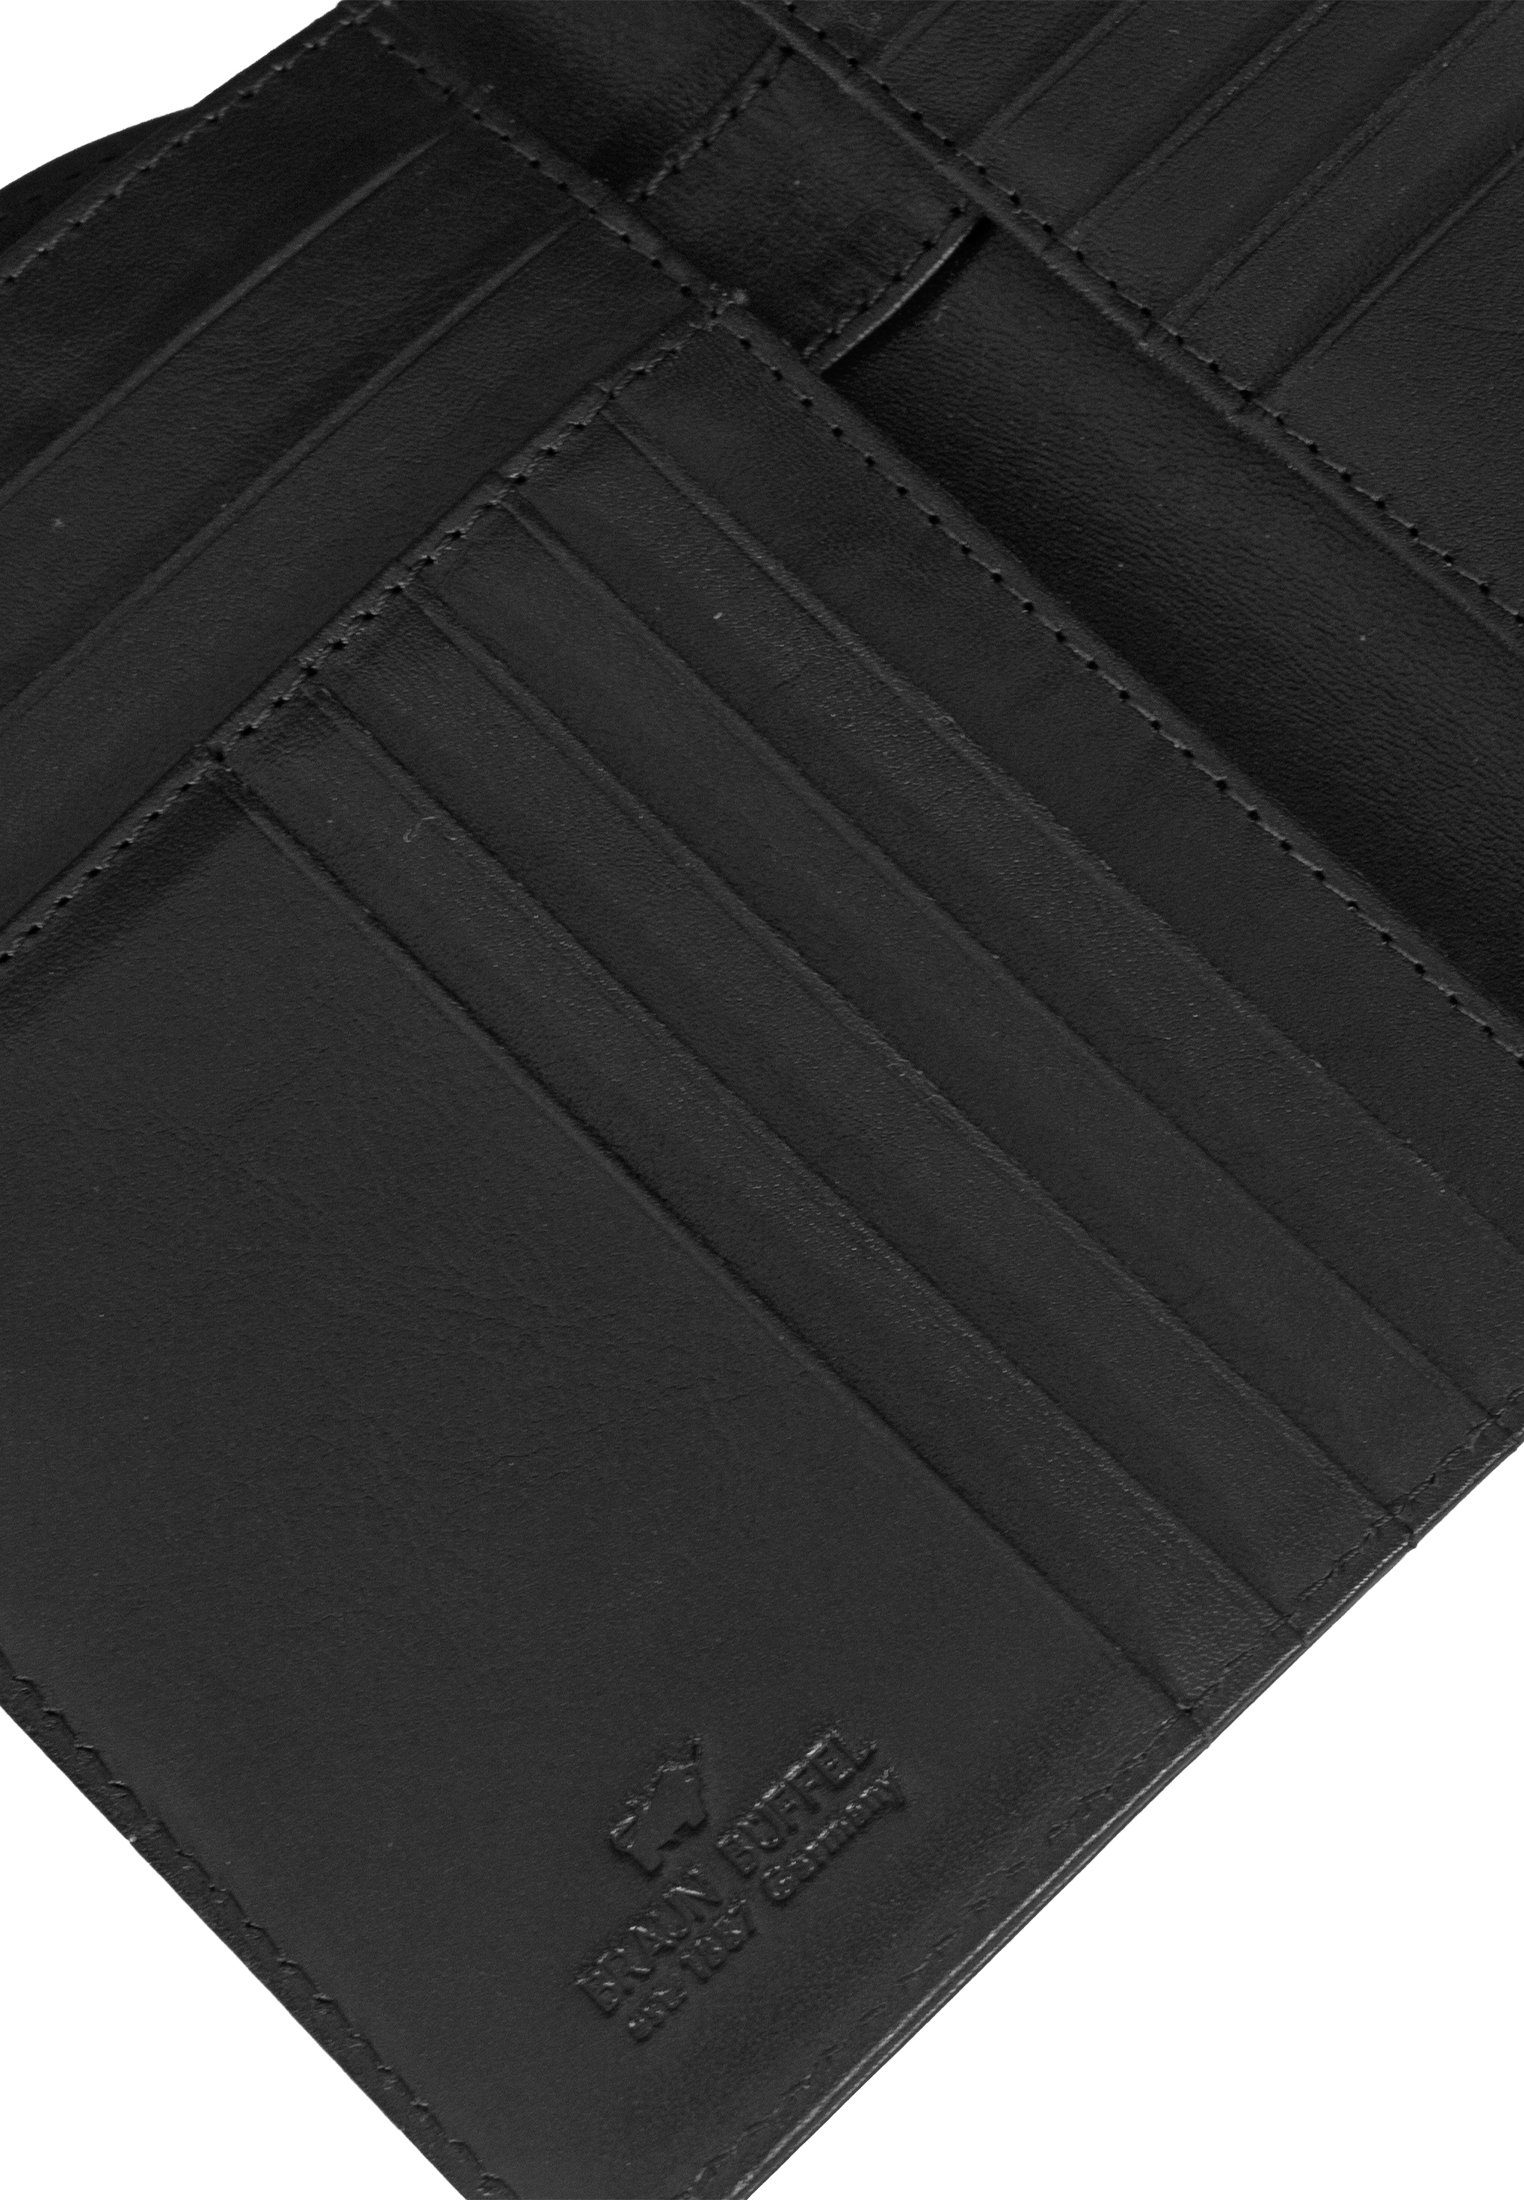 Braun Büffel Brieftasche COUNTRY Stiftehalter schwarz RFID mit Brieftasche